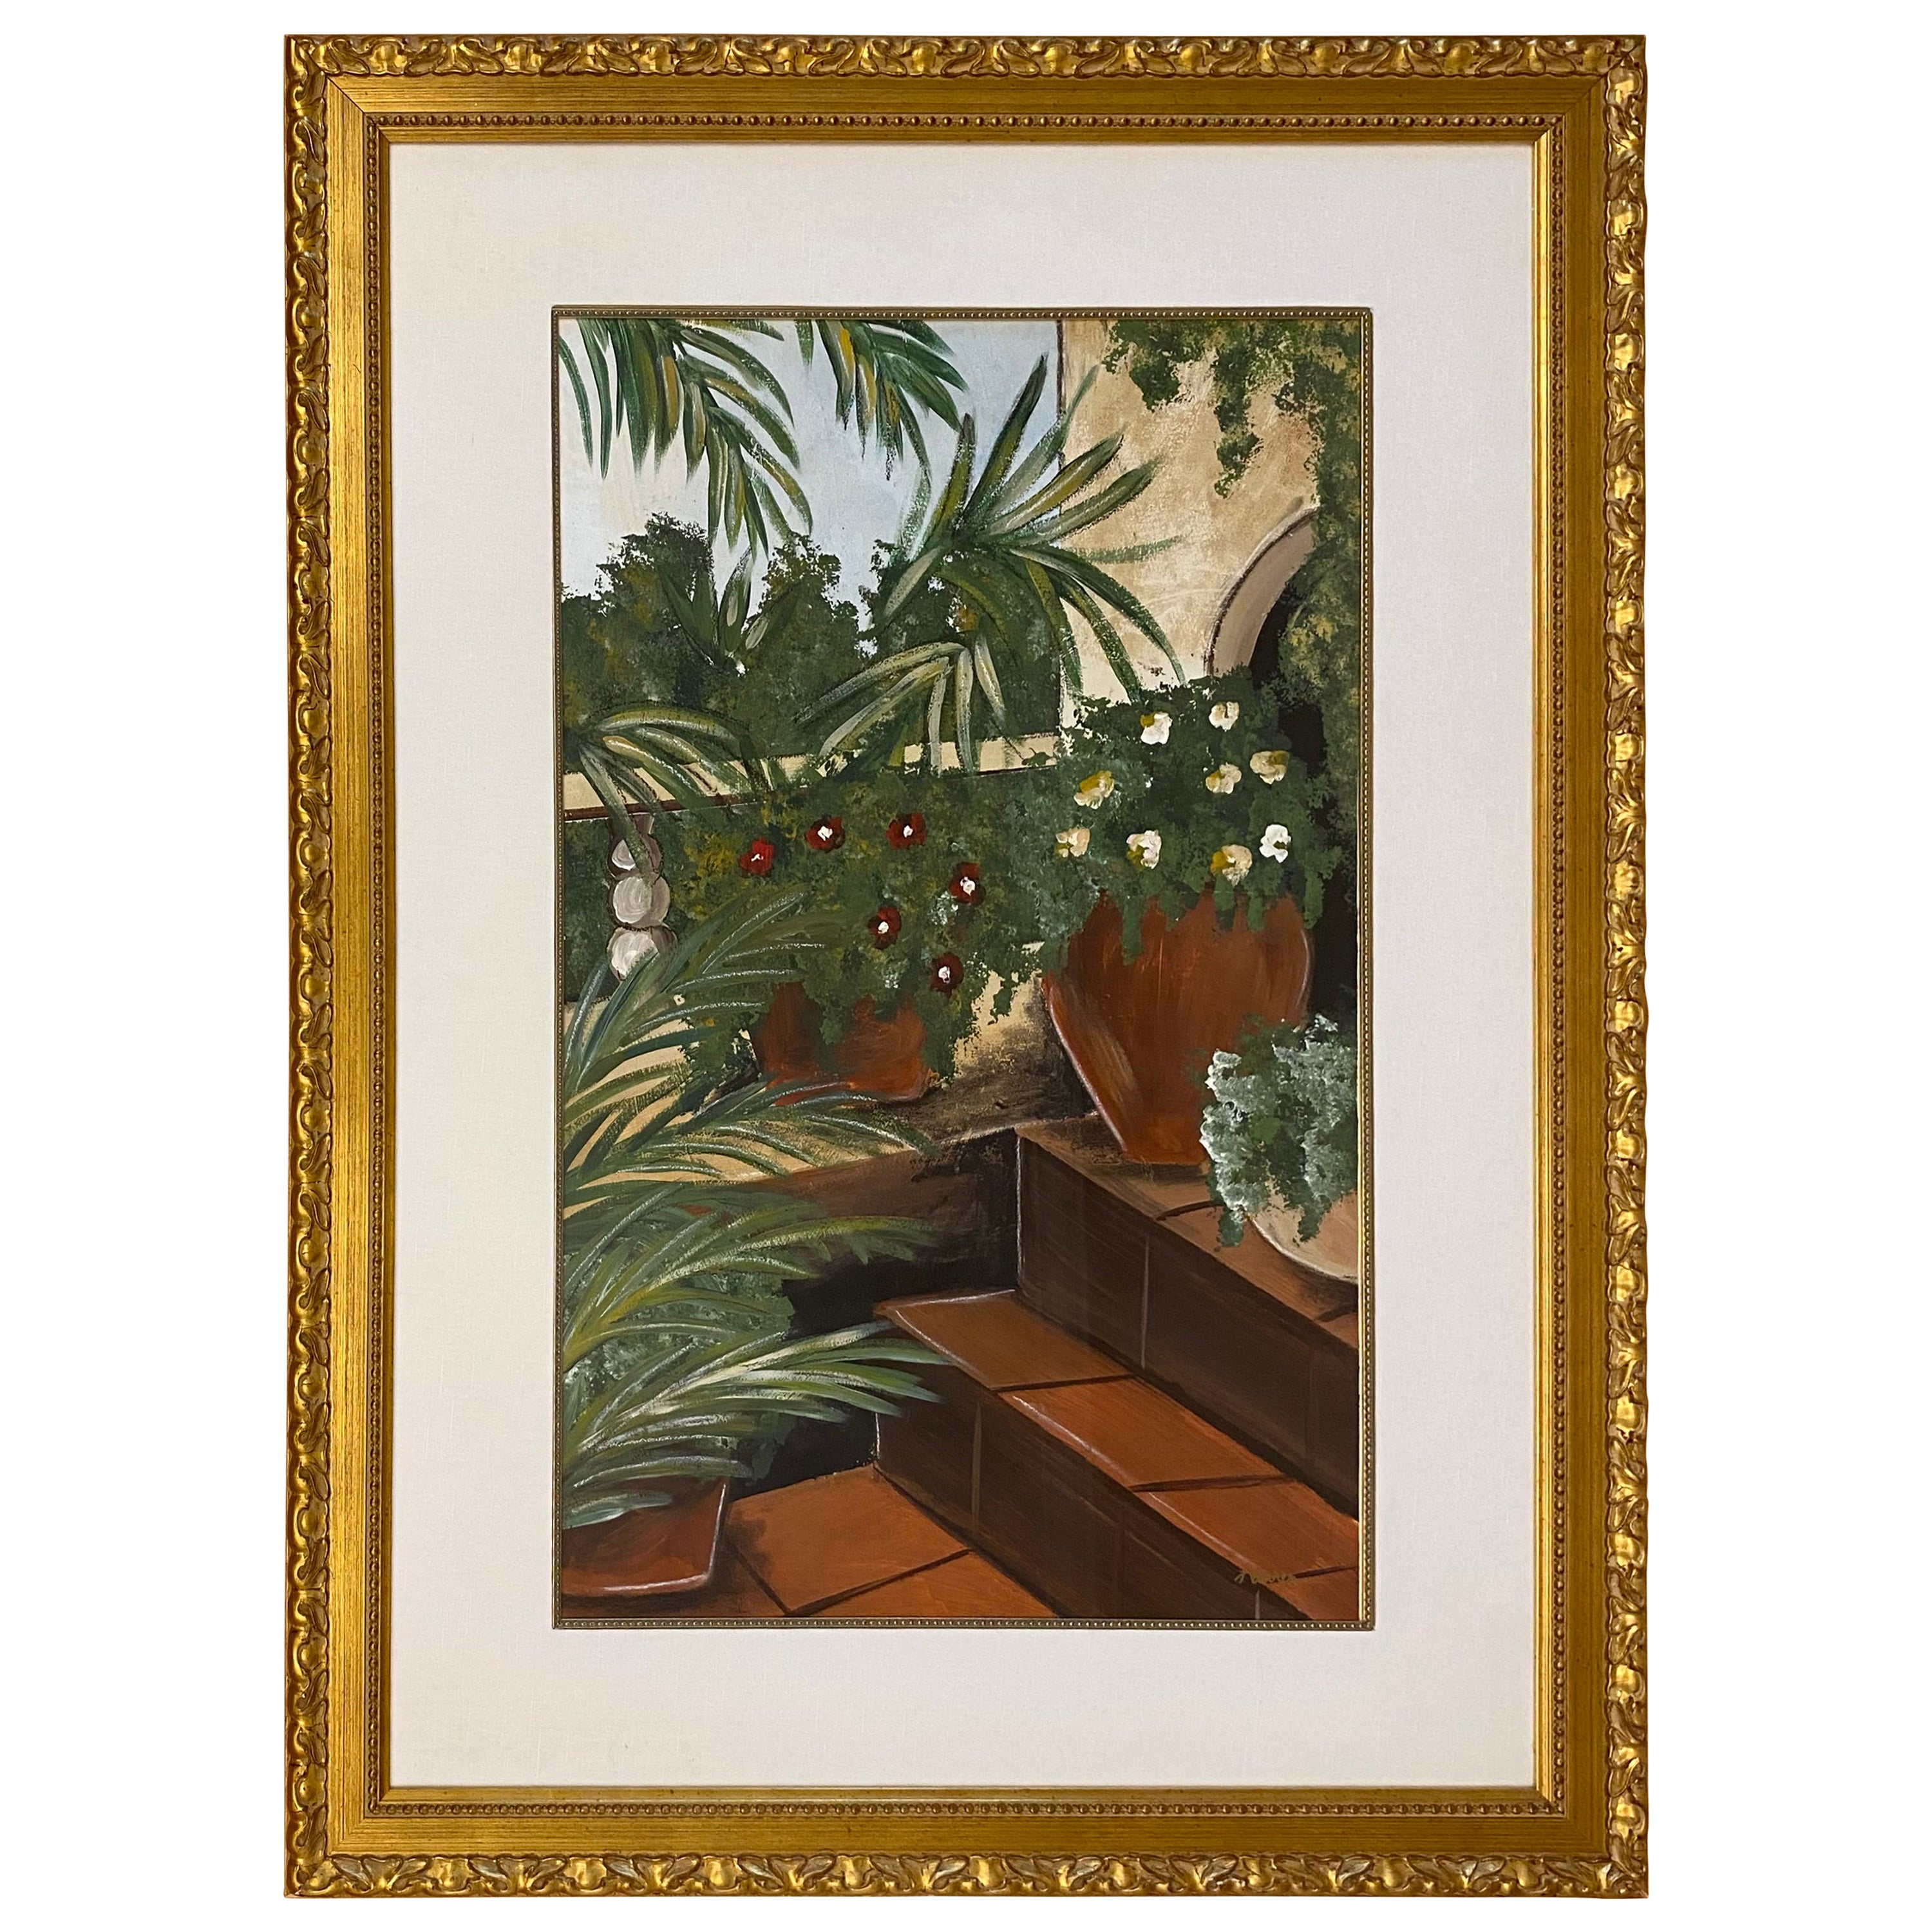 Grande peinture à l'huile sur papier de palmiers tropicaux dans un cadre en bois doré